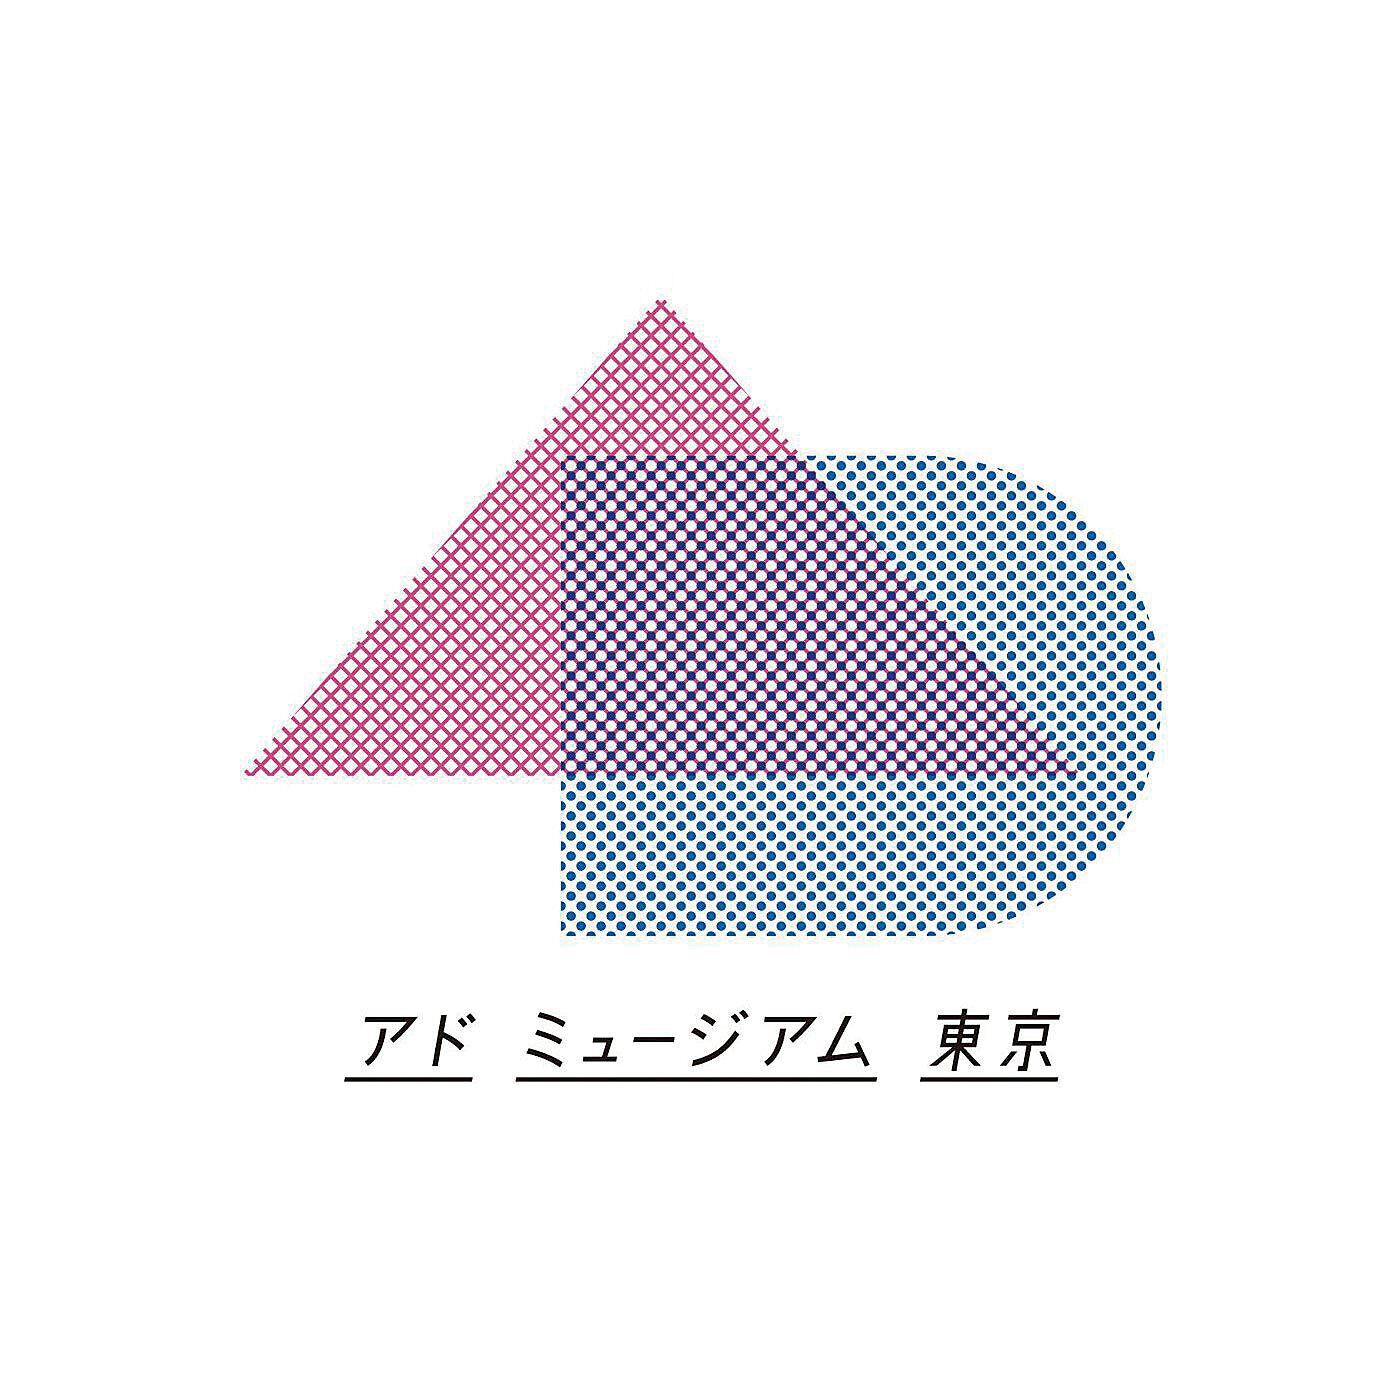 ミュージアム部|アドミュージアム東京×ミュージアム部　広告ポスターが写すレトロモダン 刺しゅうワッペンの会|日本で唯一の広告ミュージアム「アドミュージアム東京」とコラボレーションした企画です。